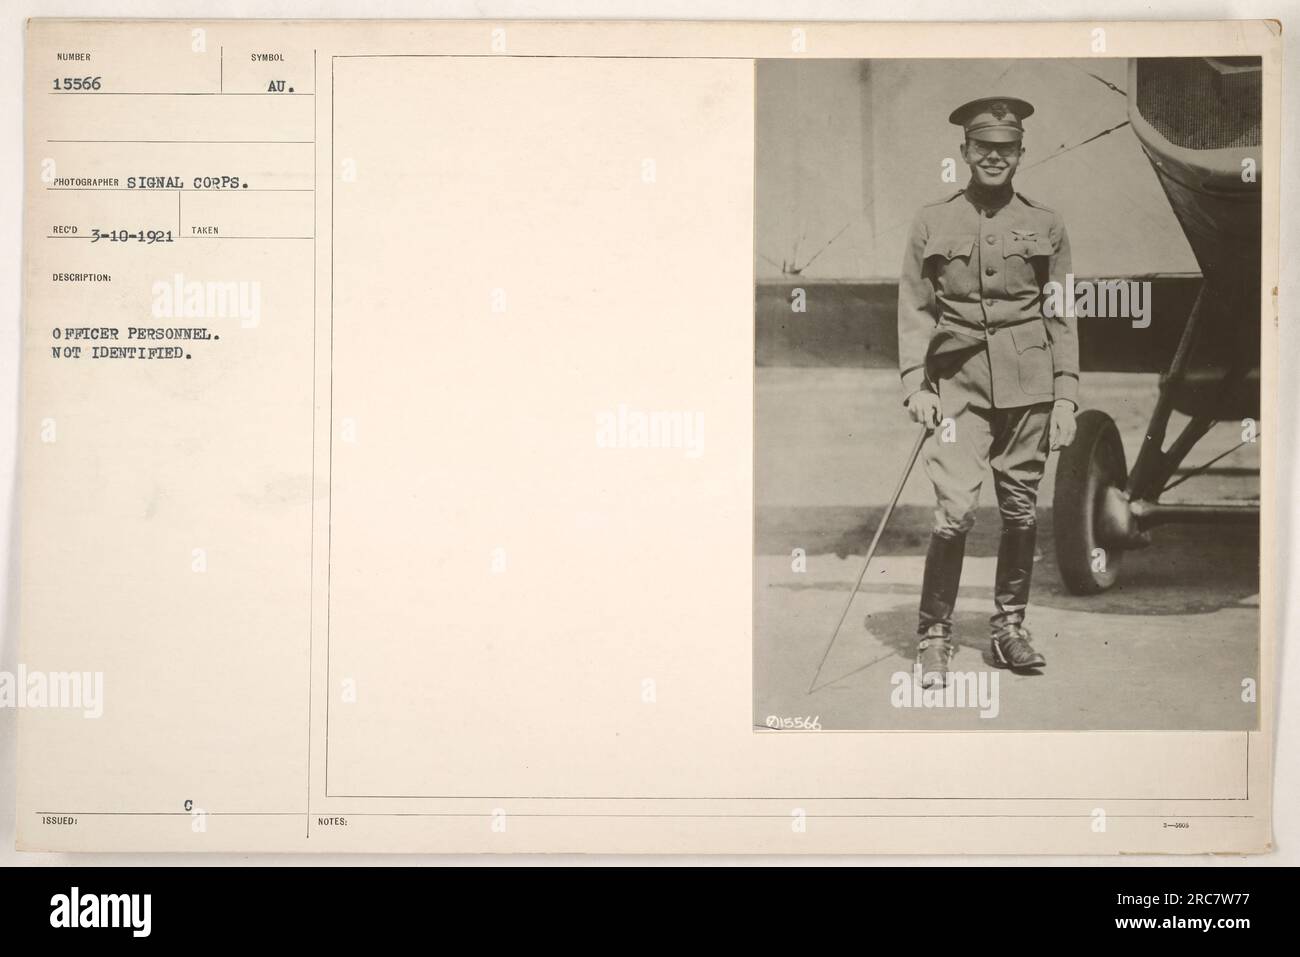 Questa fotografia mostra un gruppo di ufficiali non identificati durante la prima guerra mondiale. L'immagine, numerata 15566 e scattata dal Signal Corps, fa parte di una collezione di fotografie delle attività militari americane durante la guerra. È stato emesso con il simbolo "UA" ed è datato 10 marzo 1921. Foto Stock